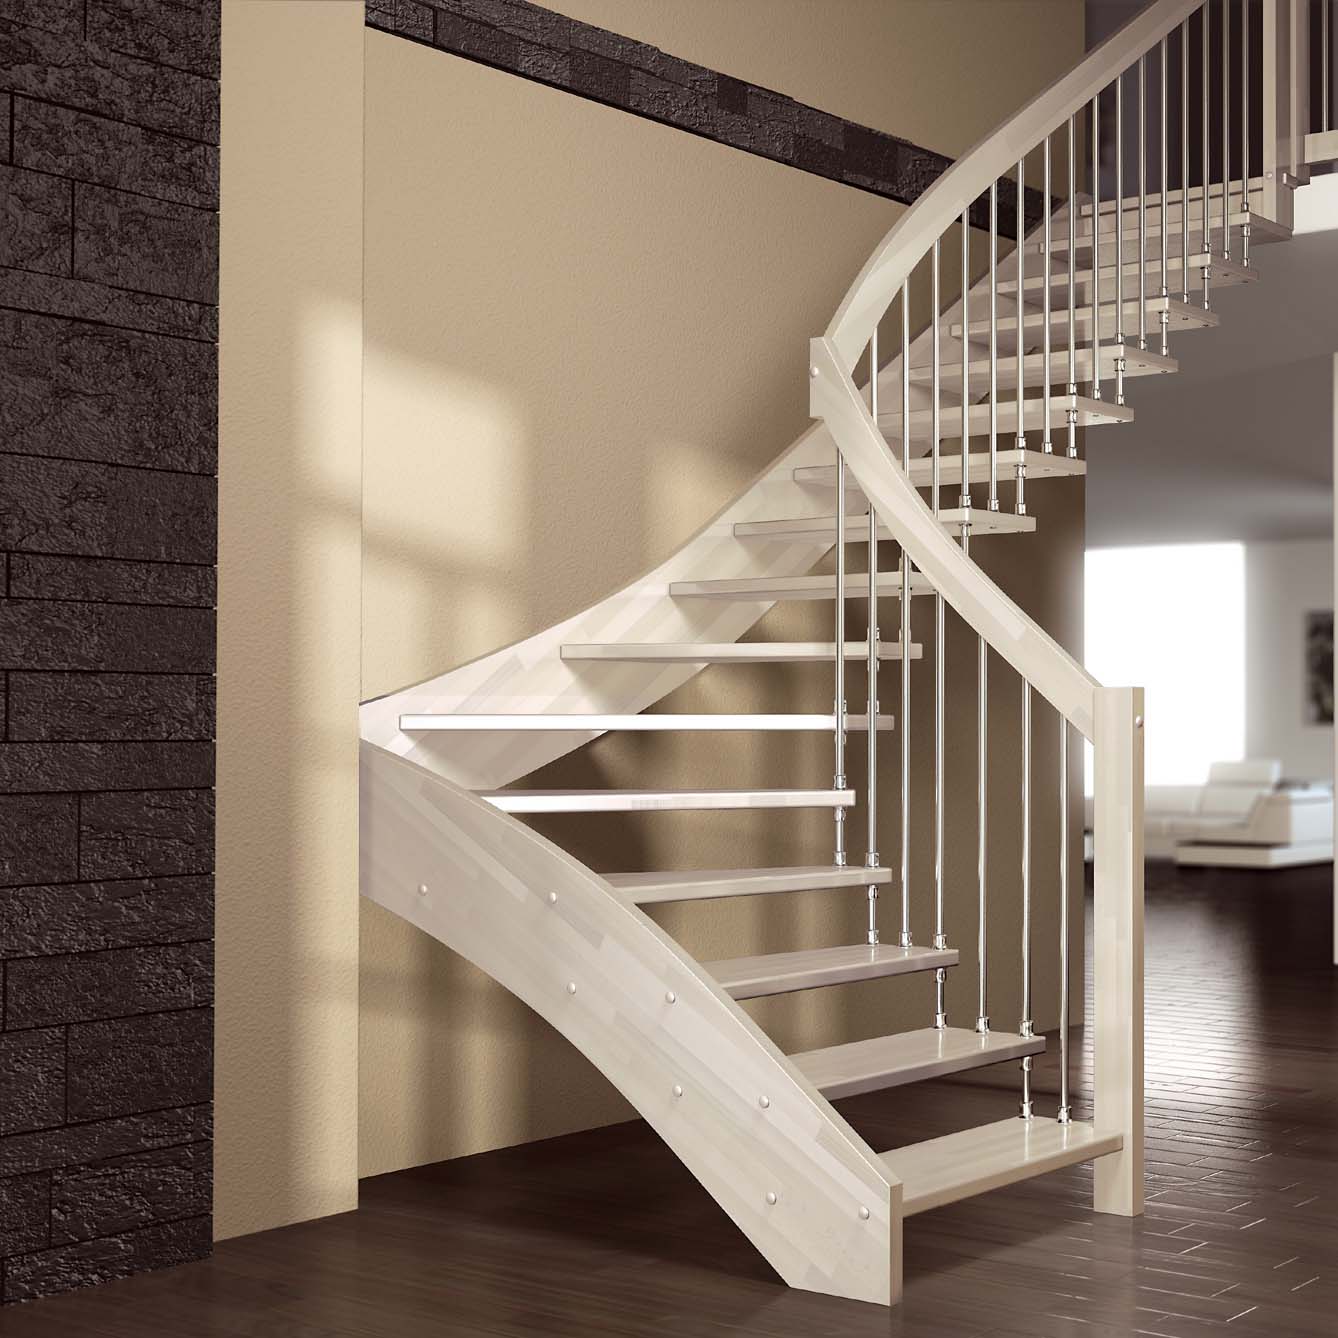 Najlepšie modely schodov do vidieckeho domu alebo bytu v druhom poschodí